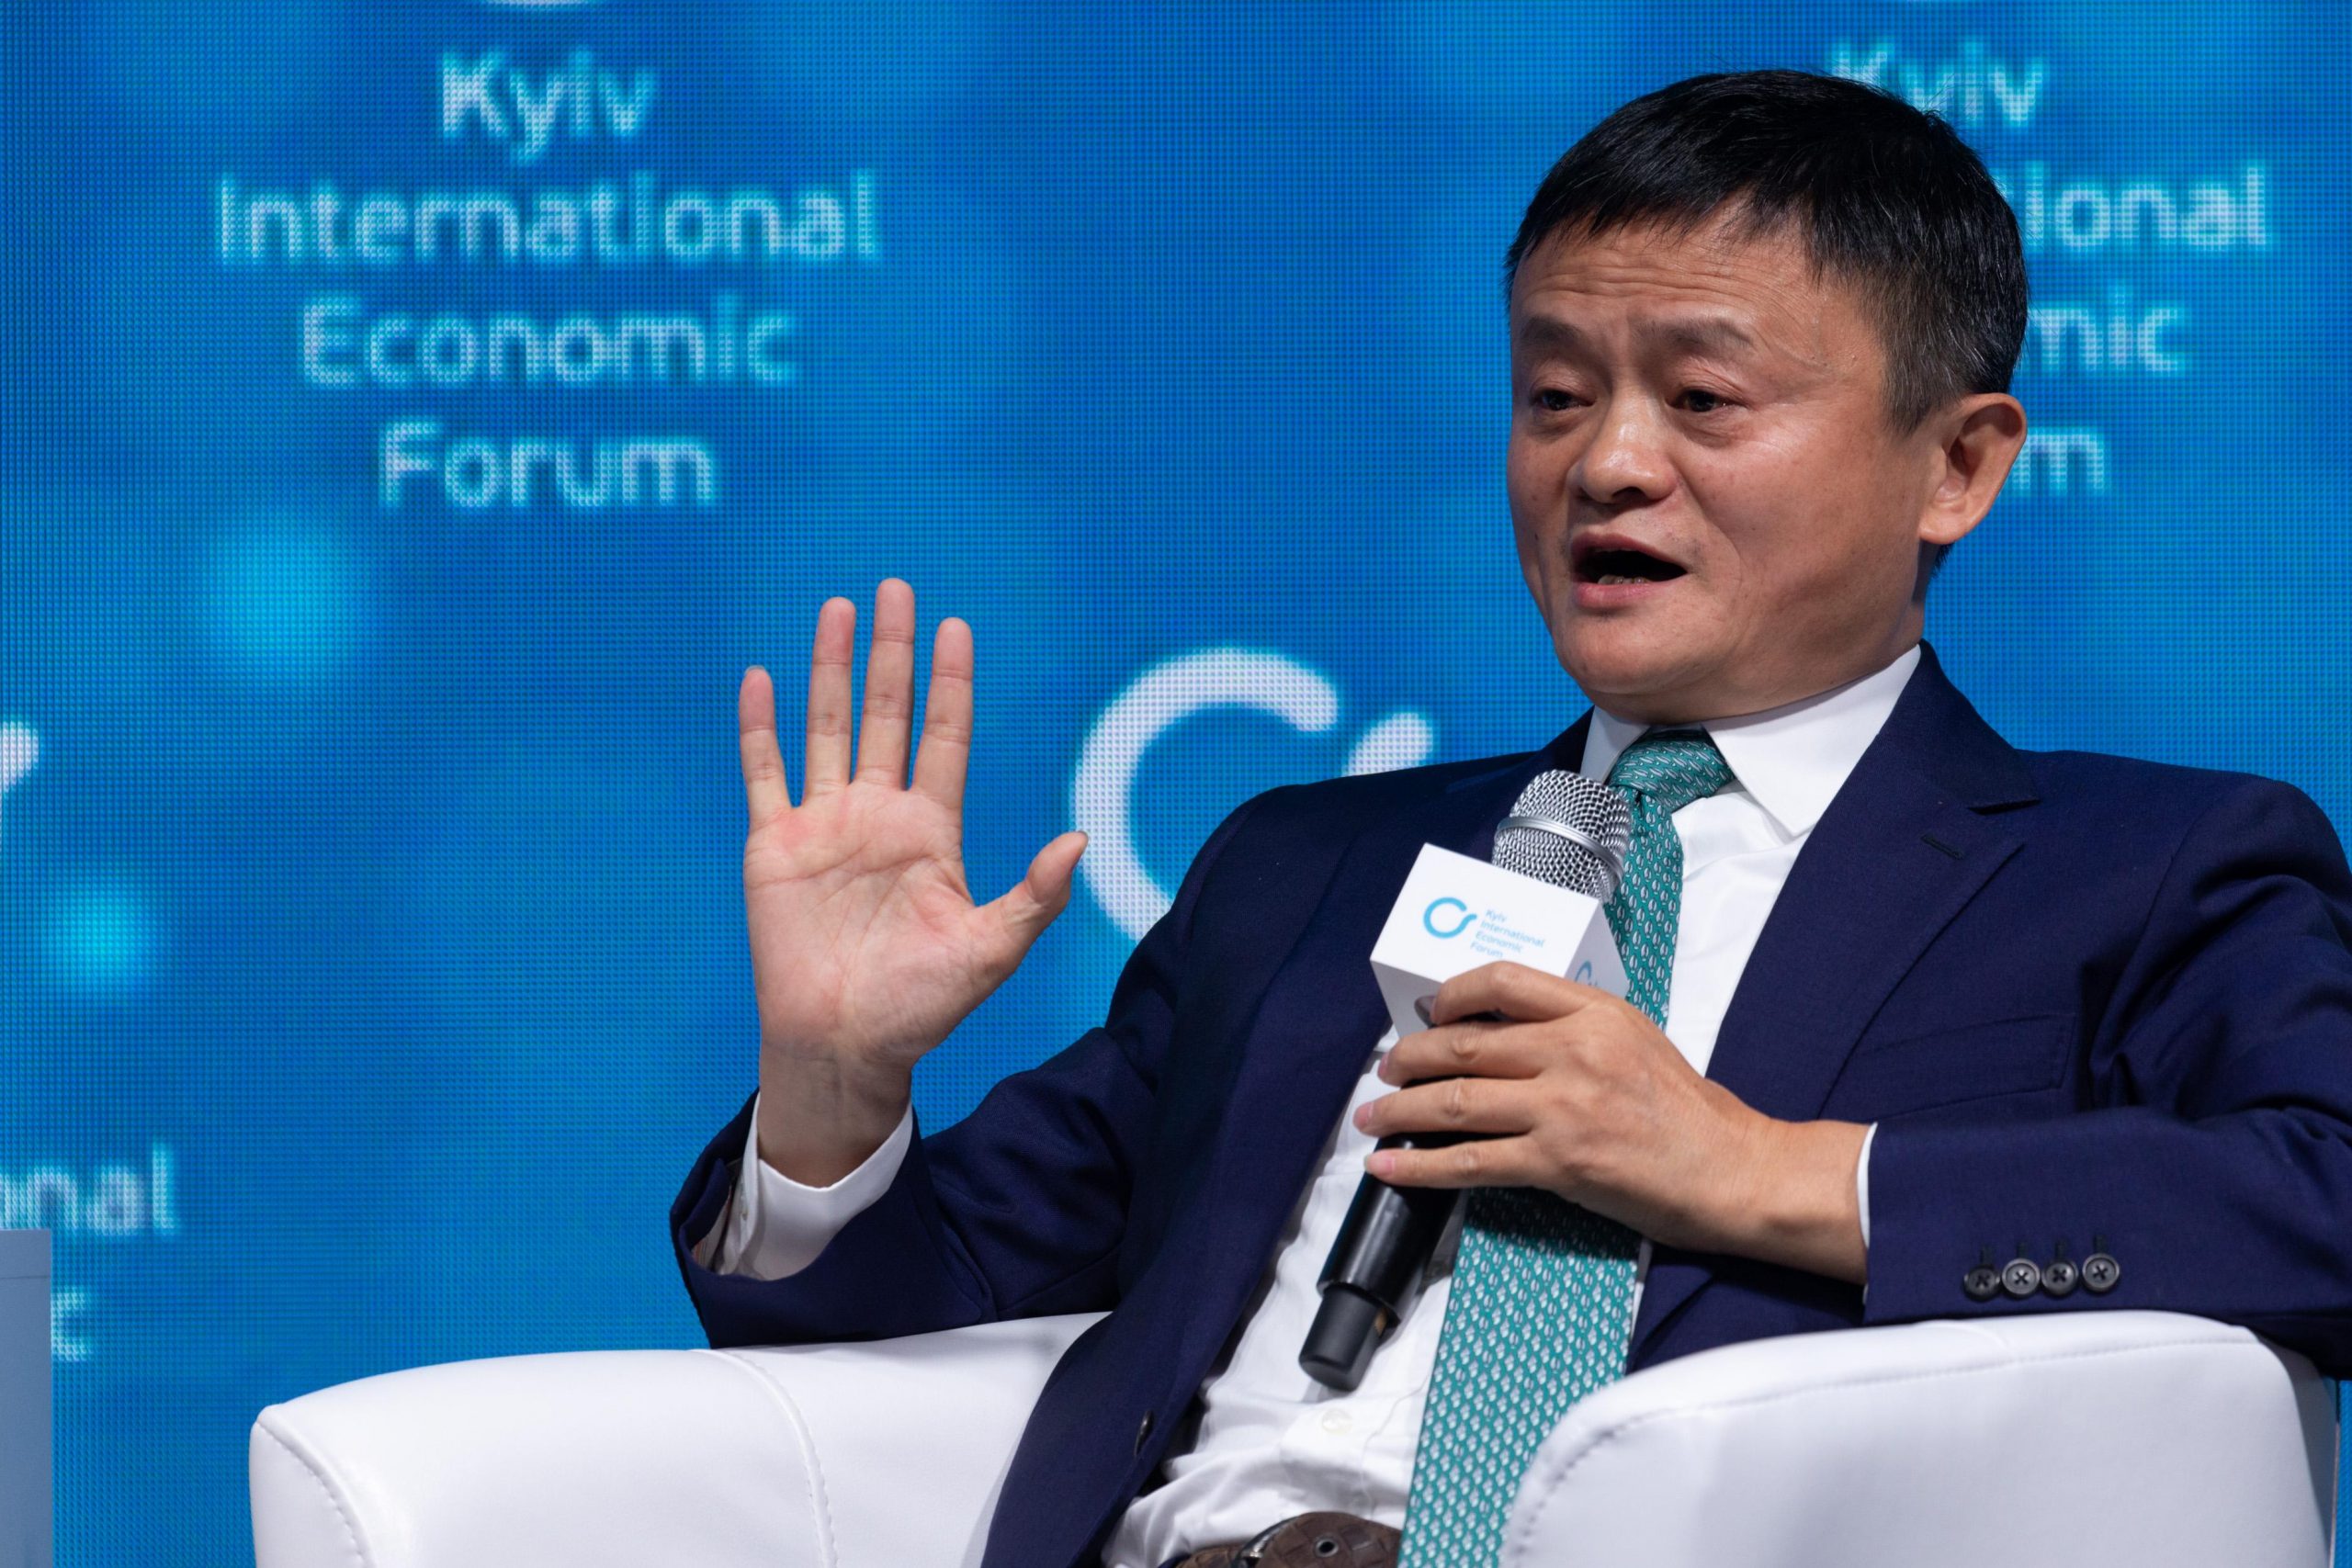 Jack Ma, founder of China's Internet giant Alibaba